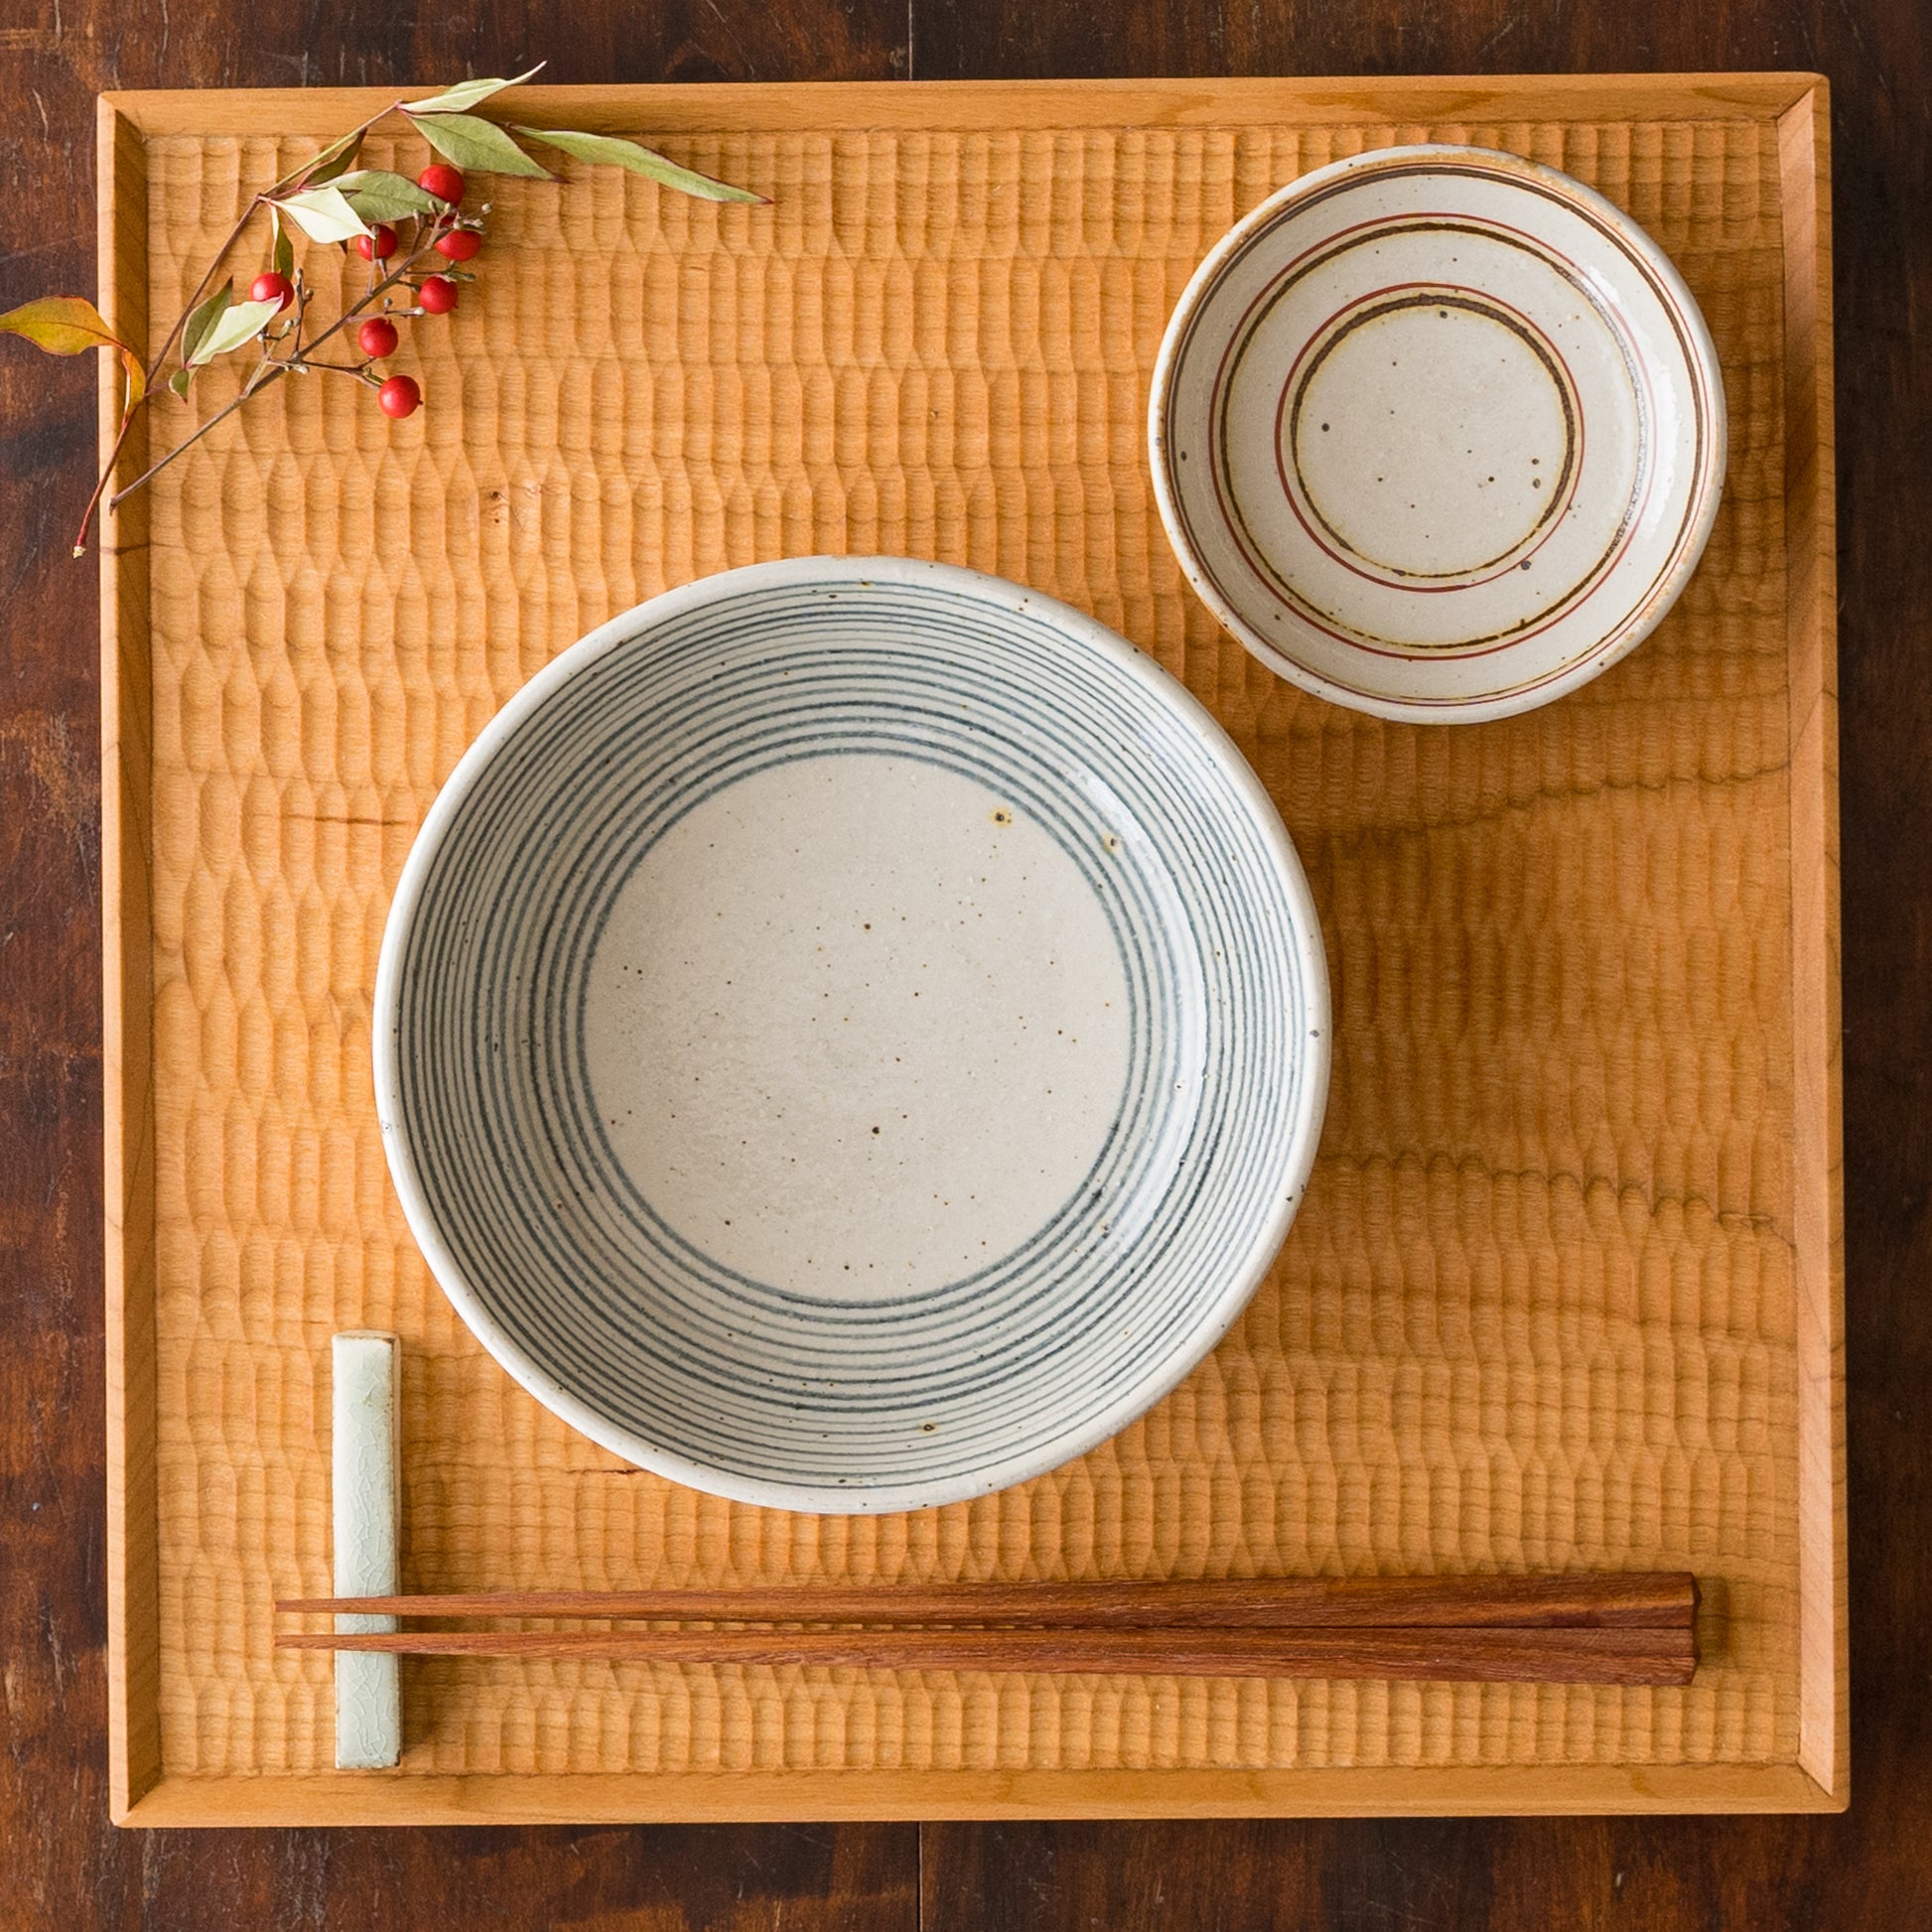 盛り付けたお料理が素敵に引き立つ冨本大輔さんの灰釉絵付3寸皿と染付5寸鉢